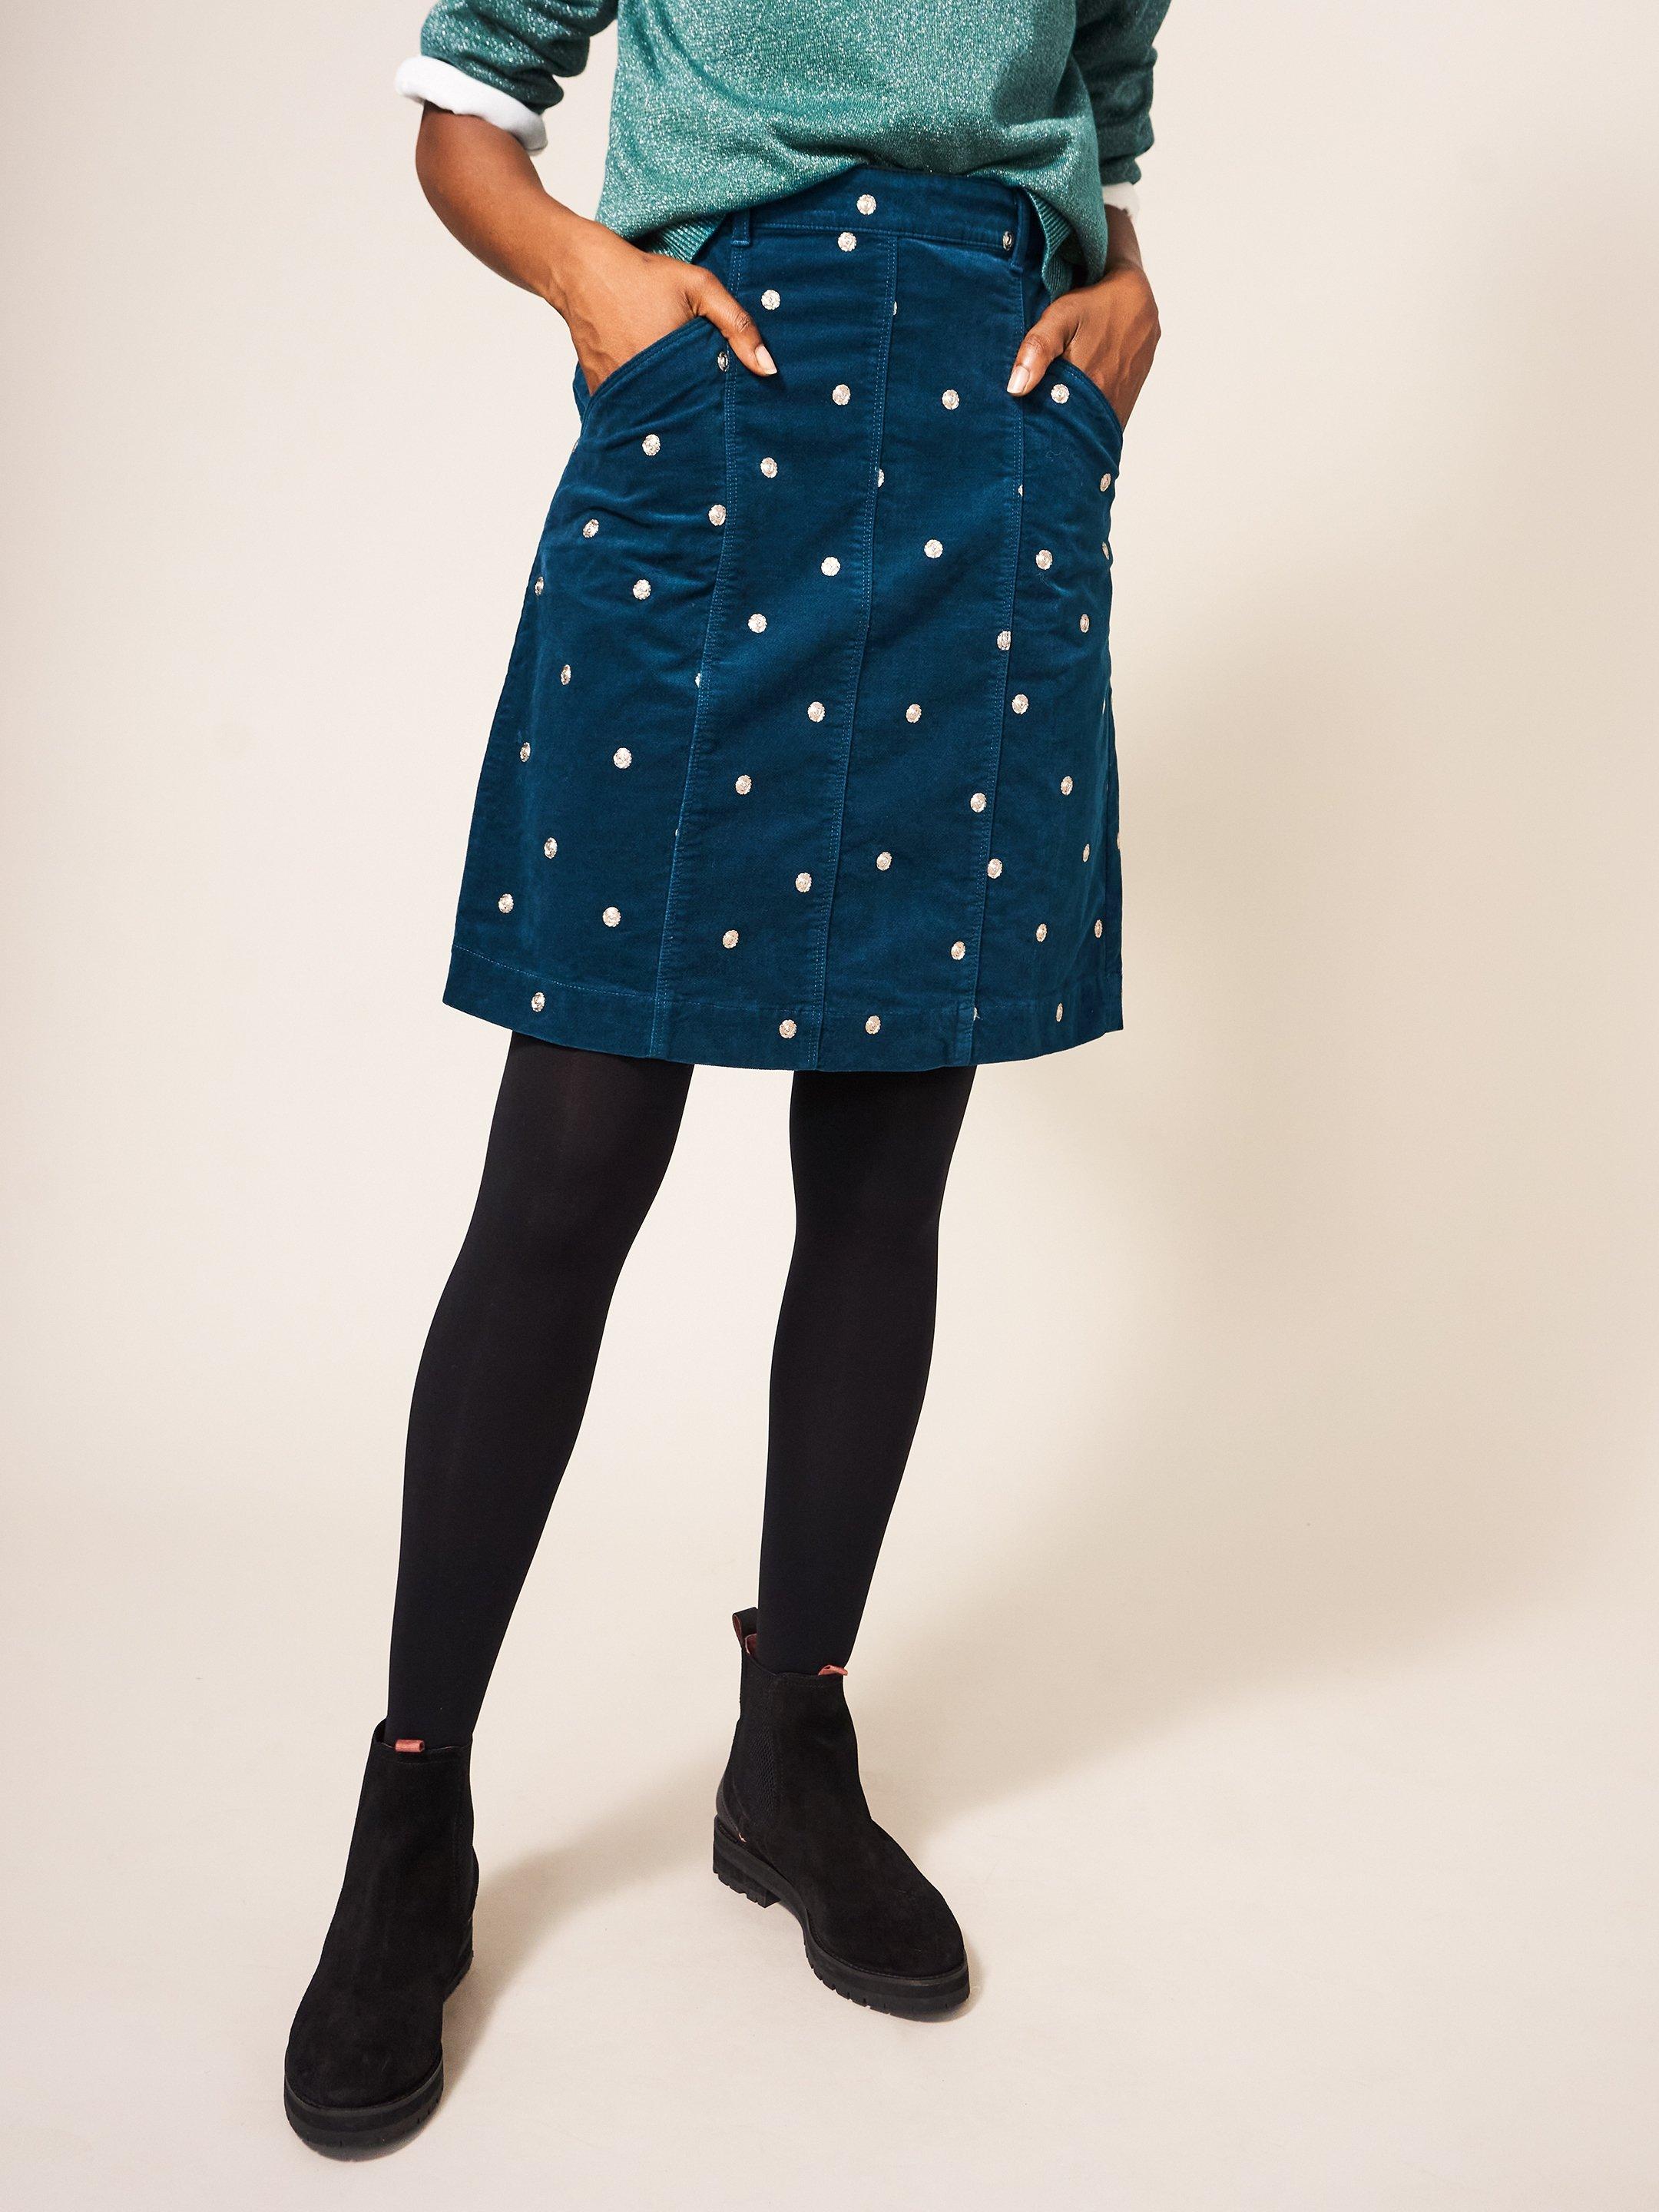 Josie Velvet Embroidered Skirt in MID TEAL - MODEL FRONT